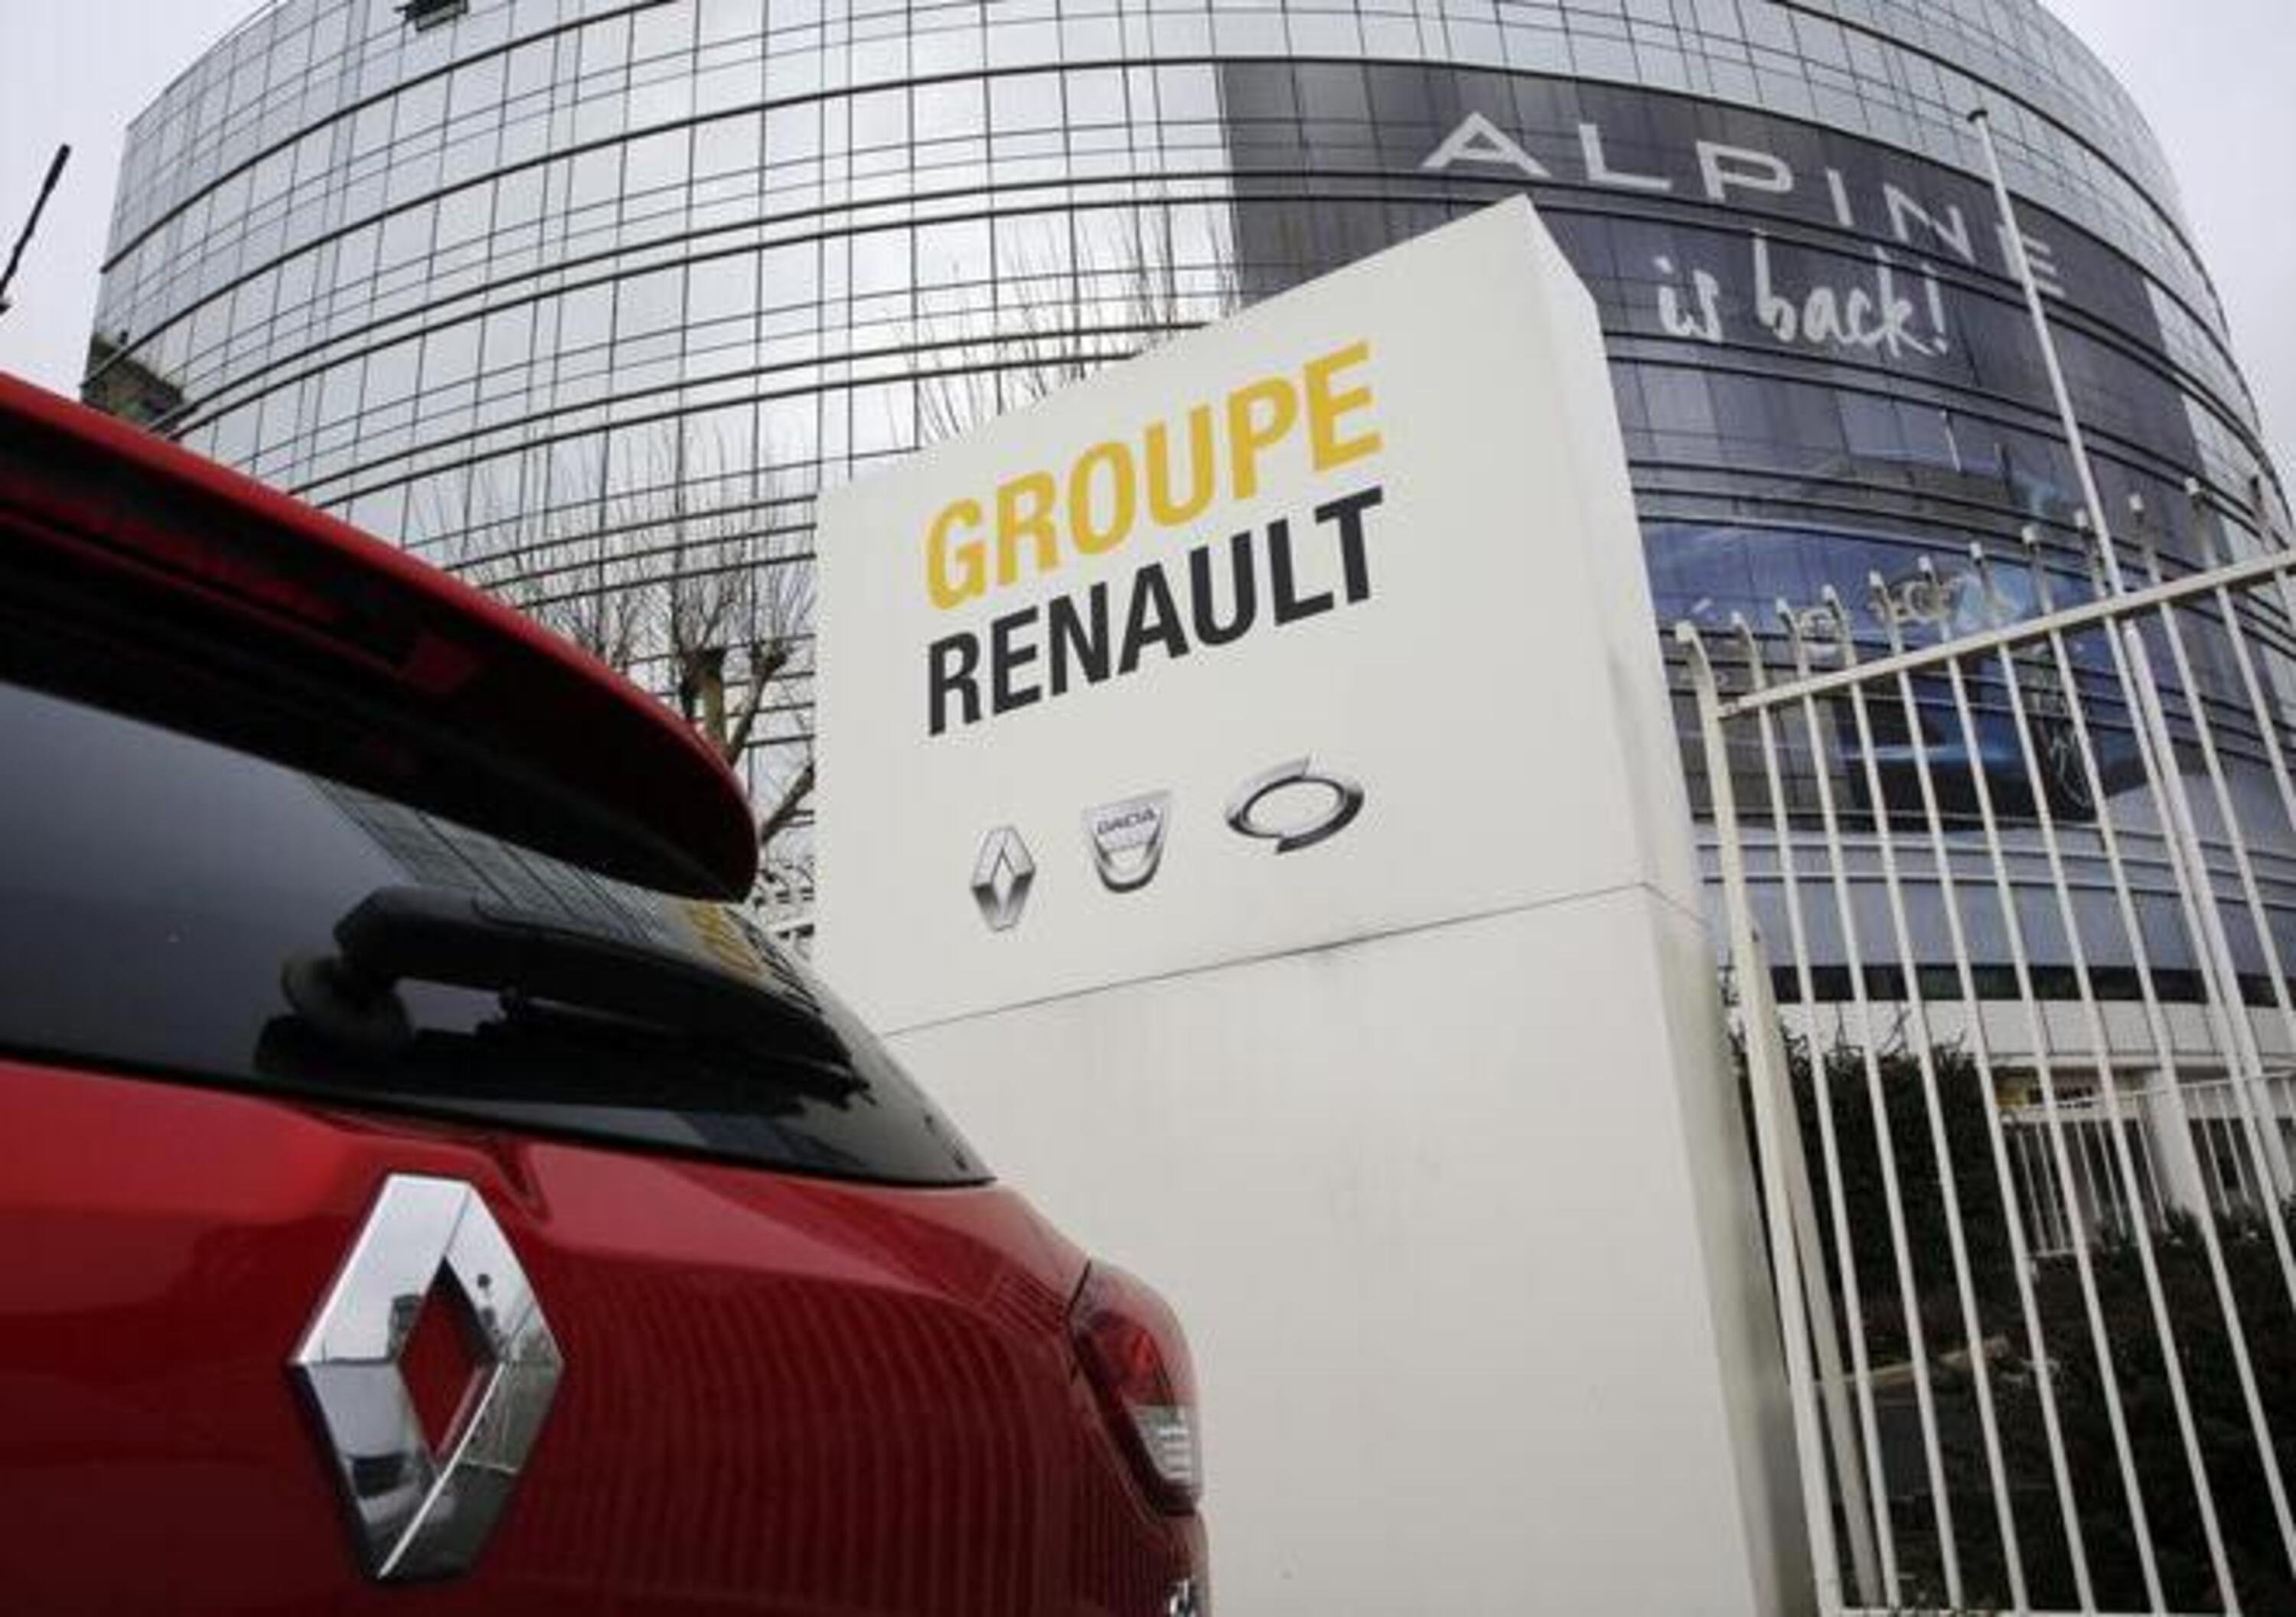 FCA-Renault, il gruppo francese conferma &laquo;interesse&raquo; per la fusione